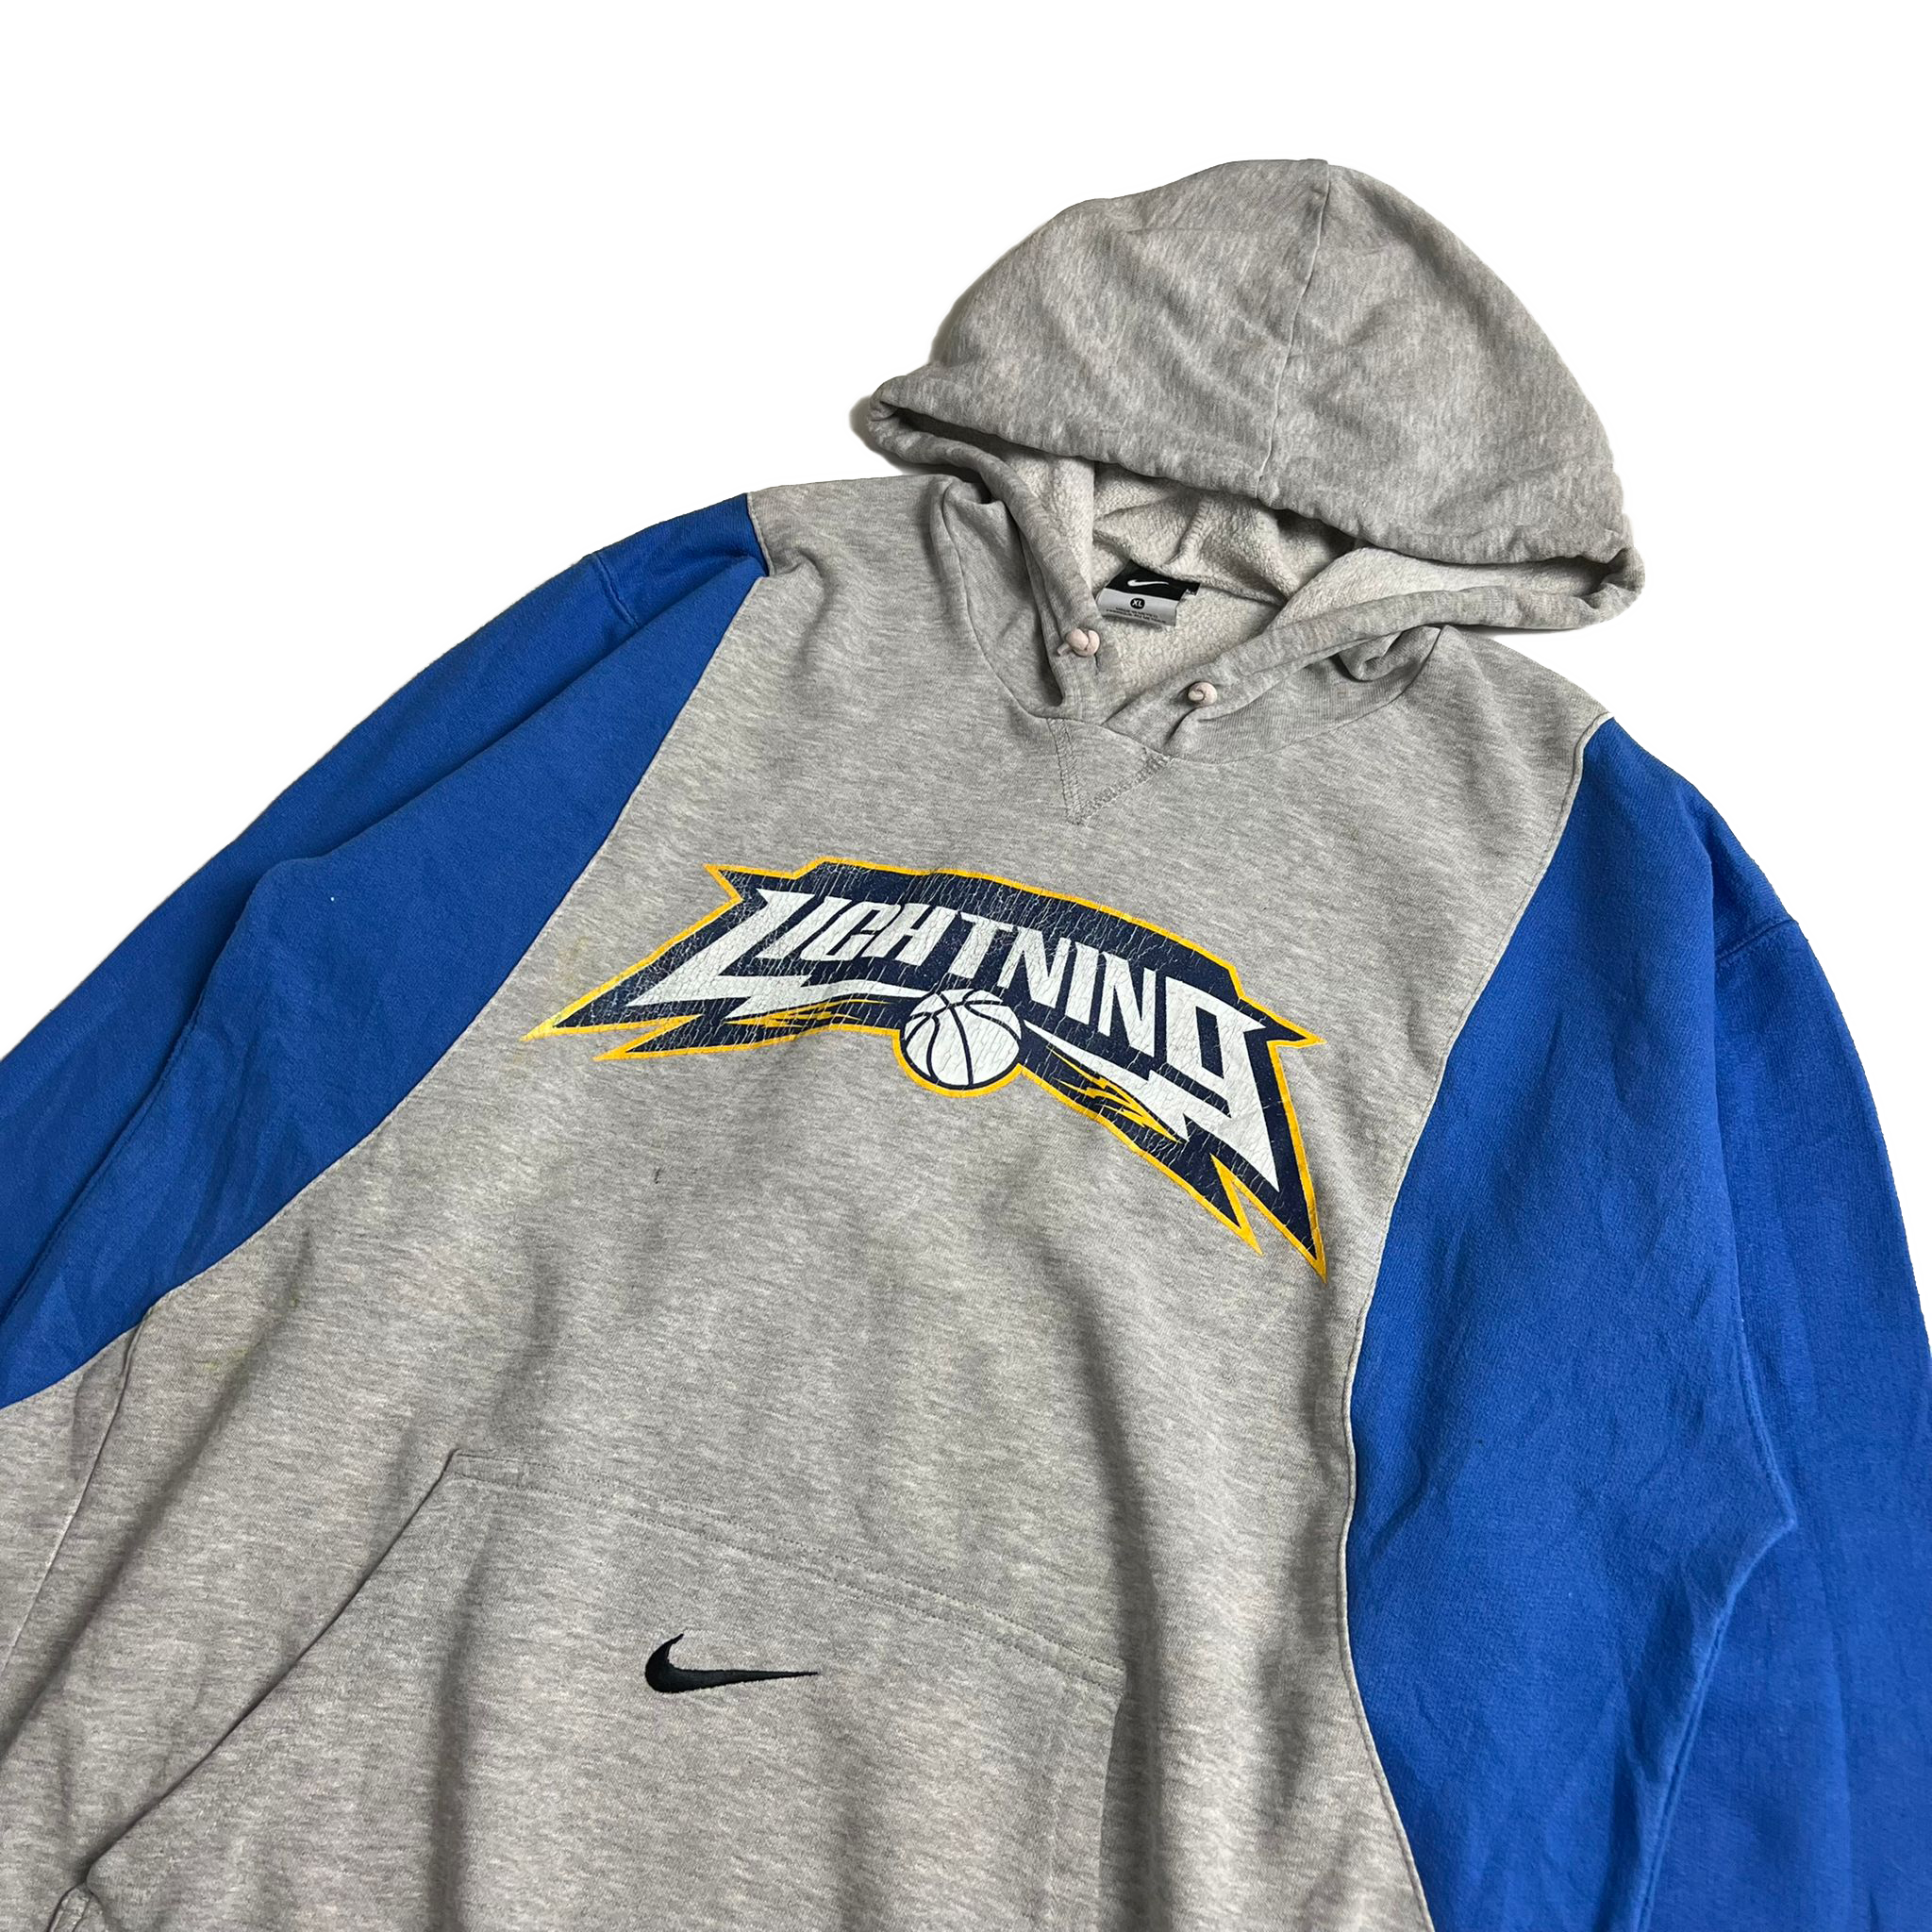 Reworked Nike NBA hoodie